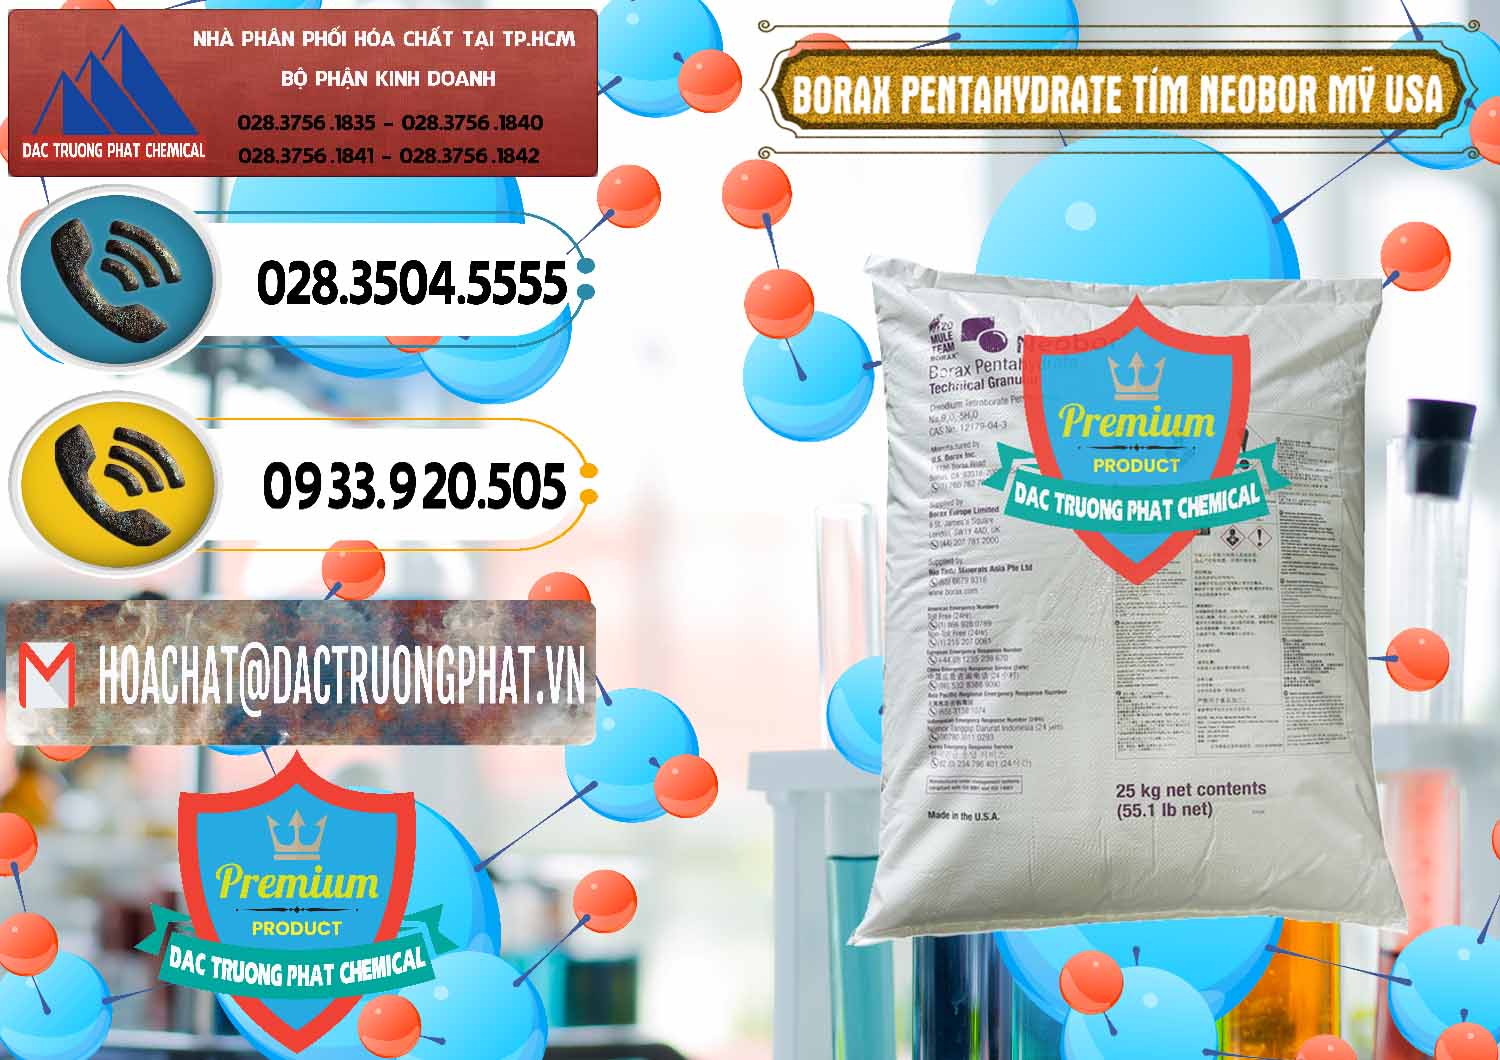 Bán & cung ứng Borax Pentahydrate Bao Tím Neobor TG Mỹ Usa - 0277 - Công ty chuyên cung cấp ( kinh doanh ) hóa chất tại TP.HCM - hoachatdetnhuom.vn